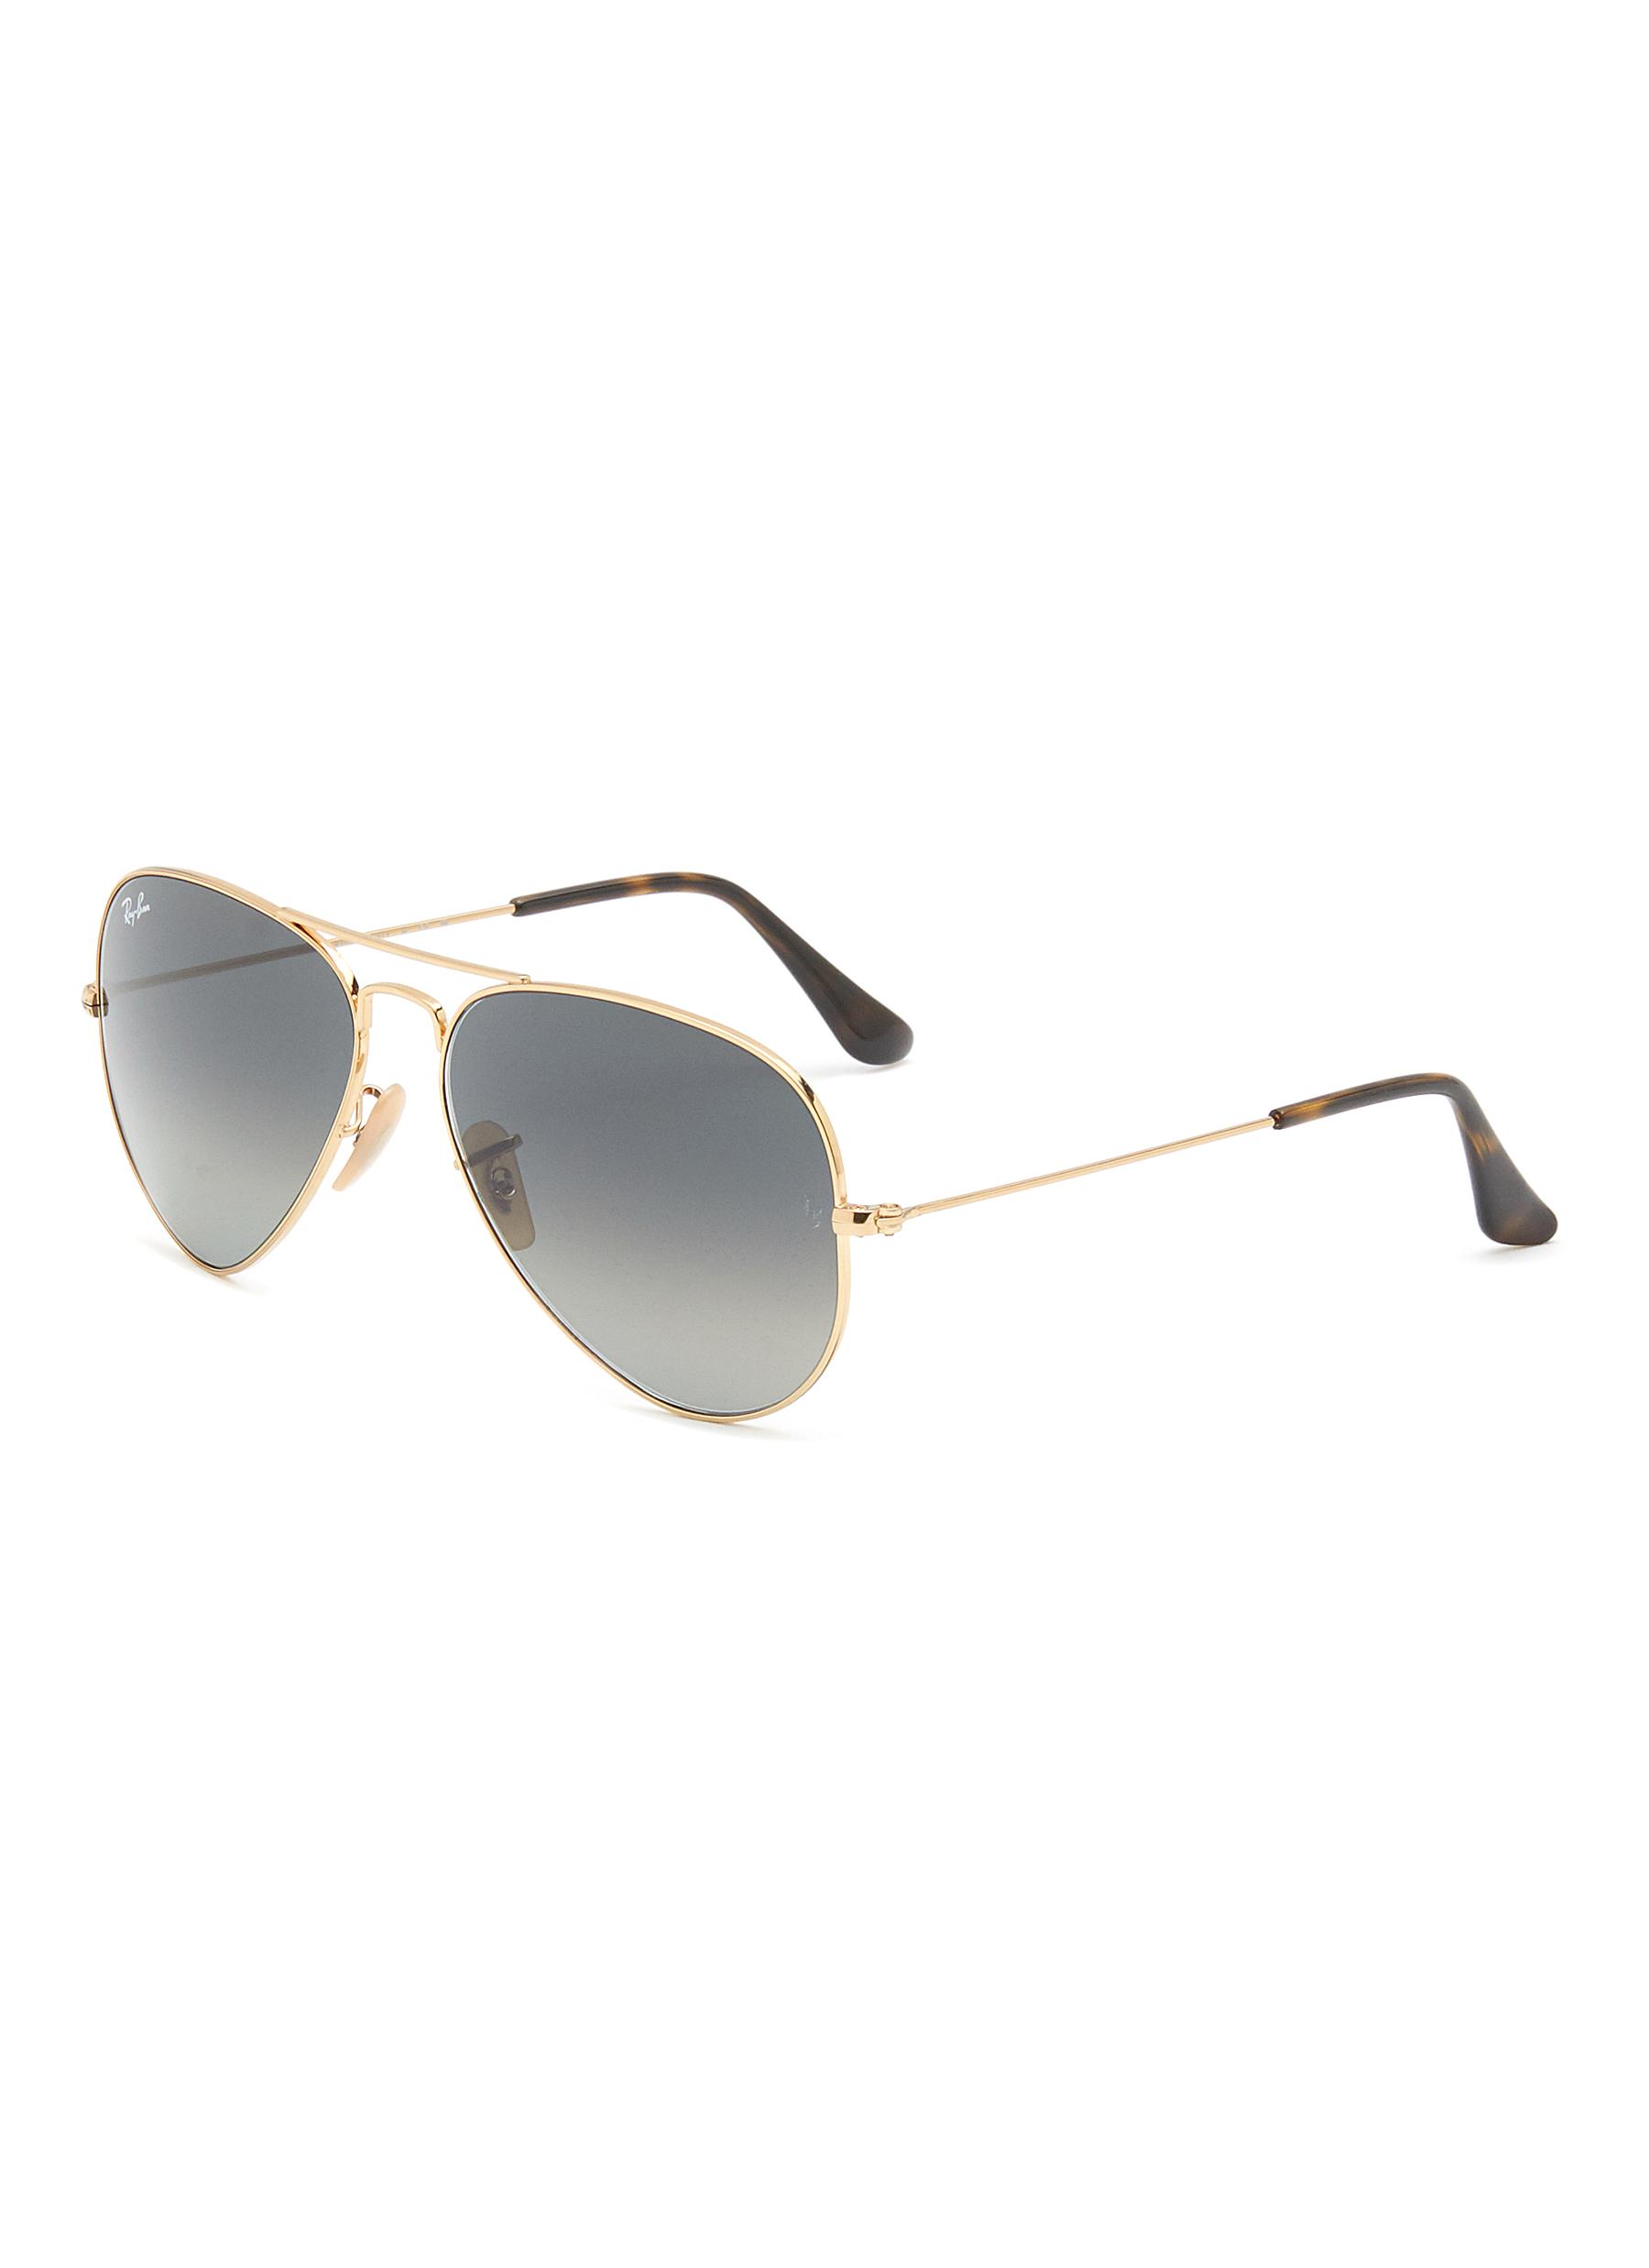 Gradient Grey Lens Gold Toned Metal Aviator Sunglasses